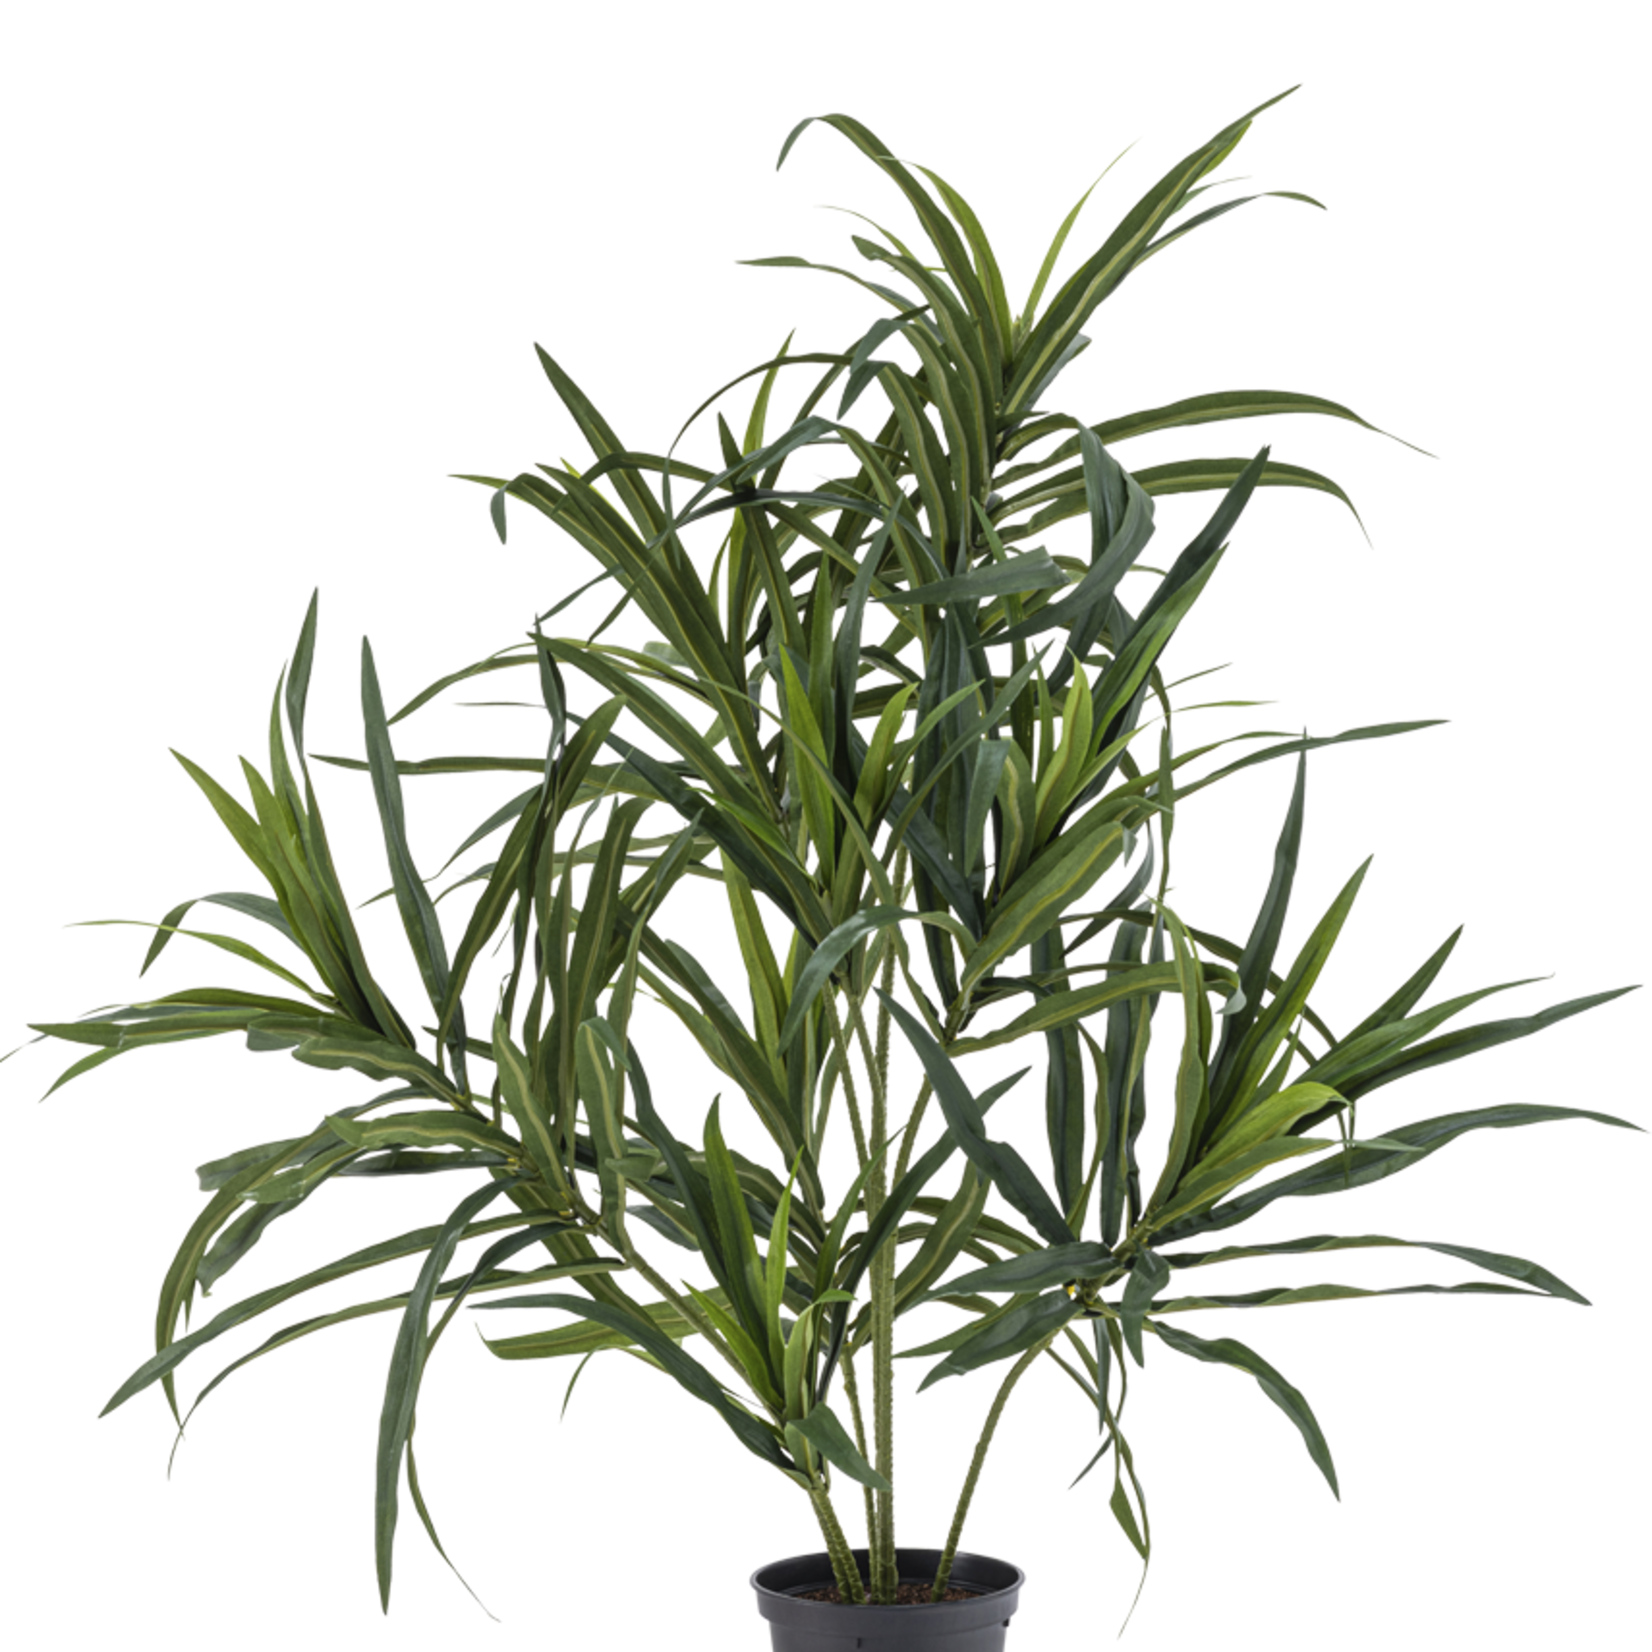 Greenmoods Kunstplant Dracaena Reflexa in pot van 63 cm